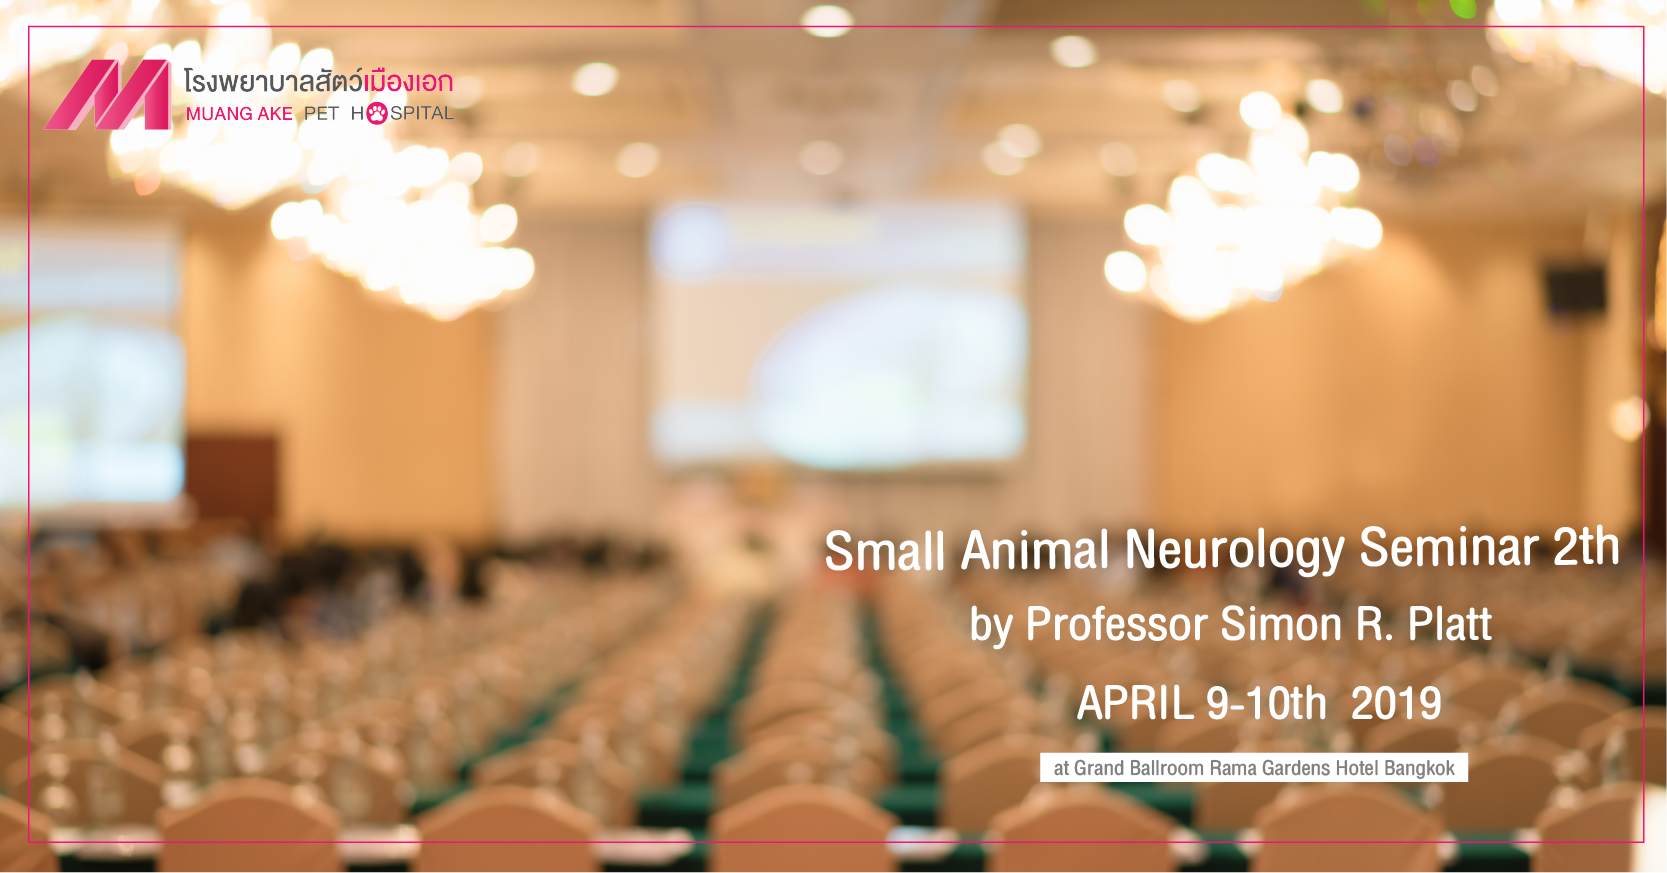 Small Animal Neurology Seminar 2nd 2019